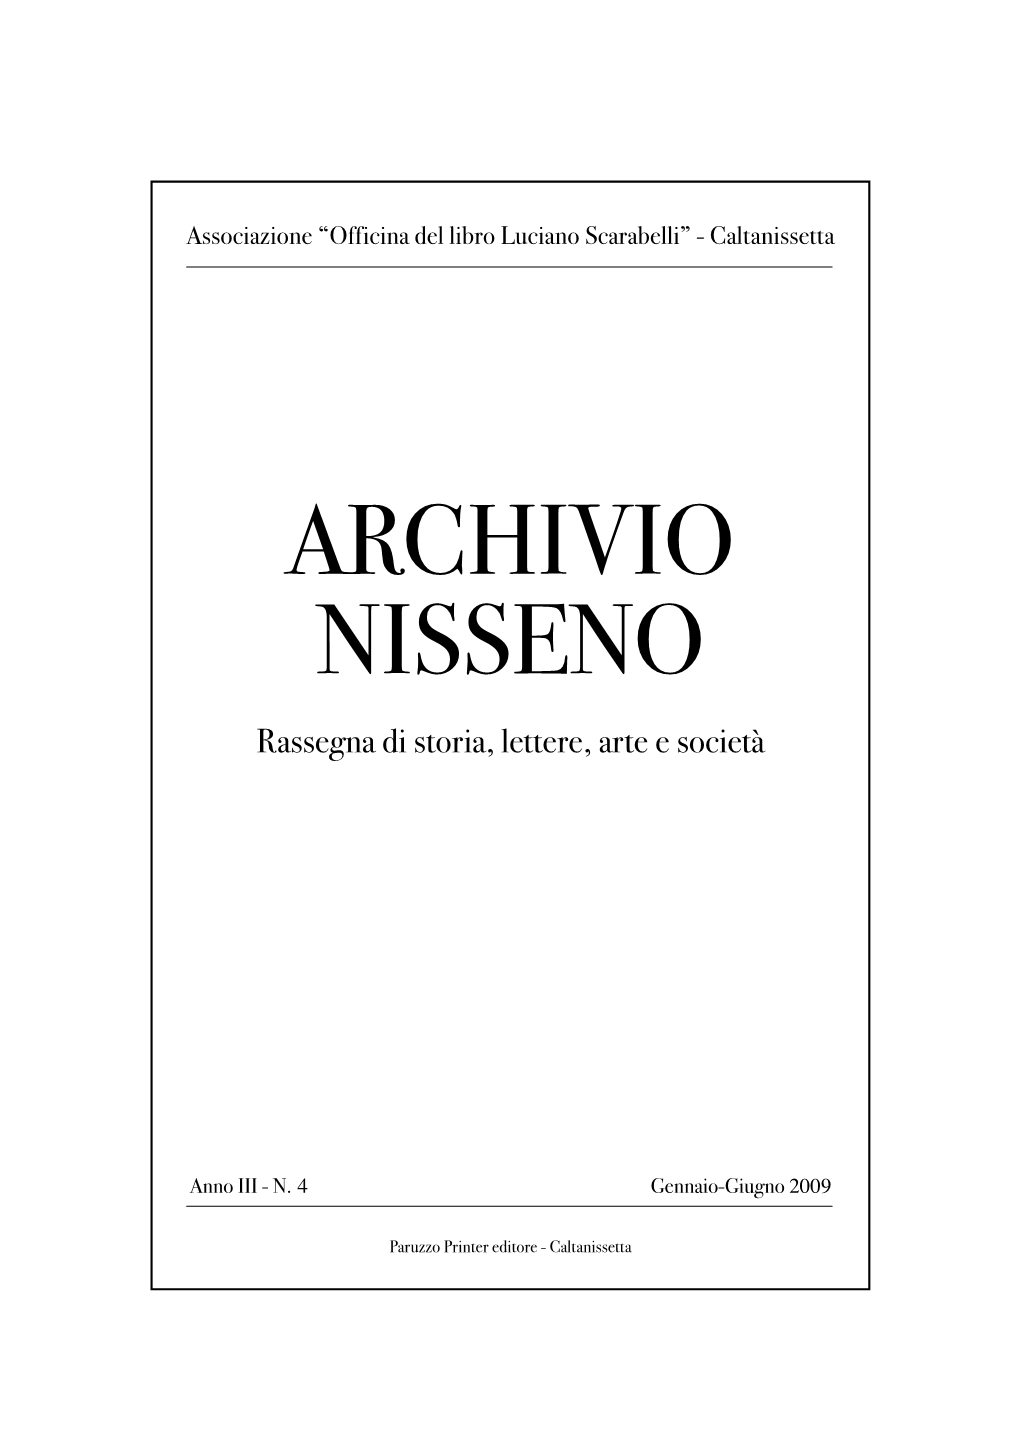 Breve Storia Della Biblioteca Comunale “Luciano Scarabelli” Di Caltanissetta